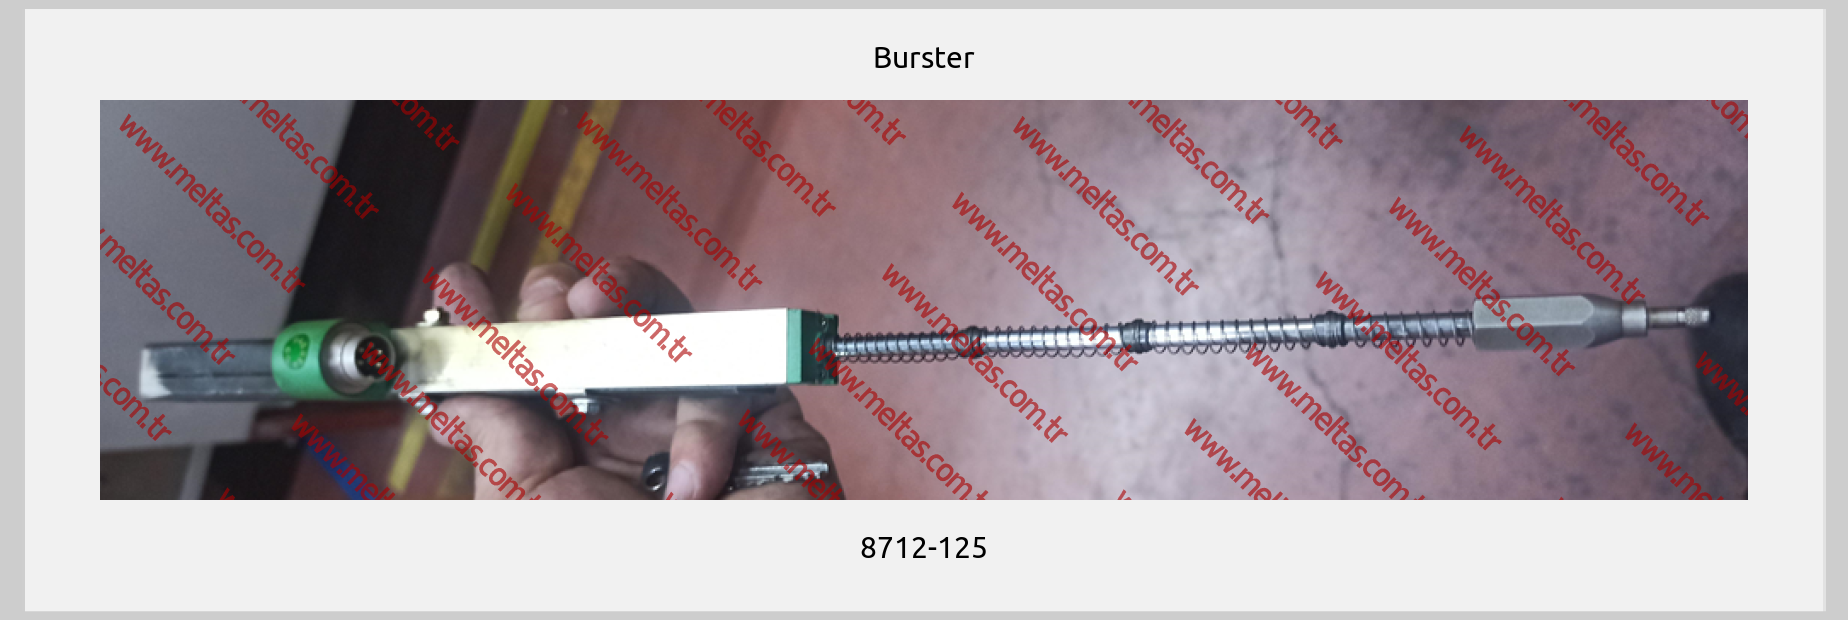 Burster - 8712-125